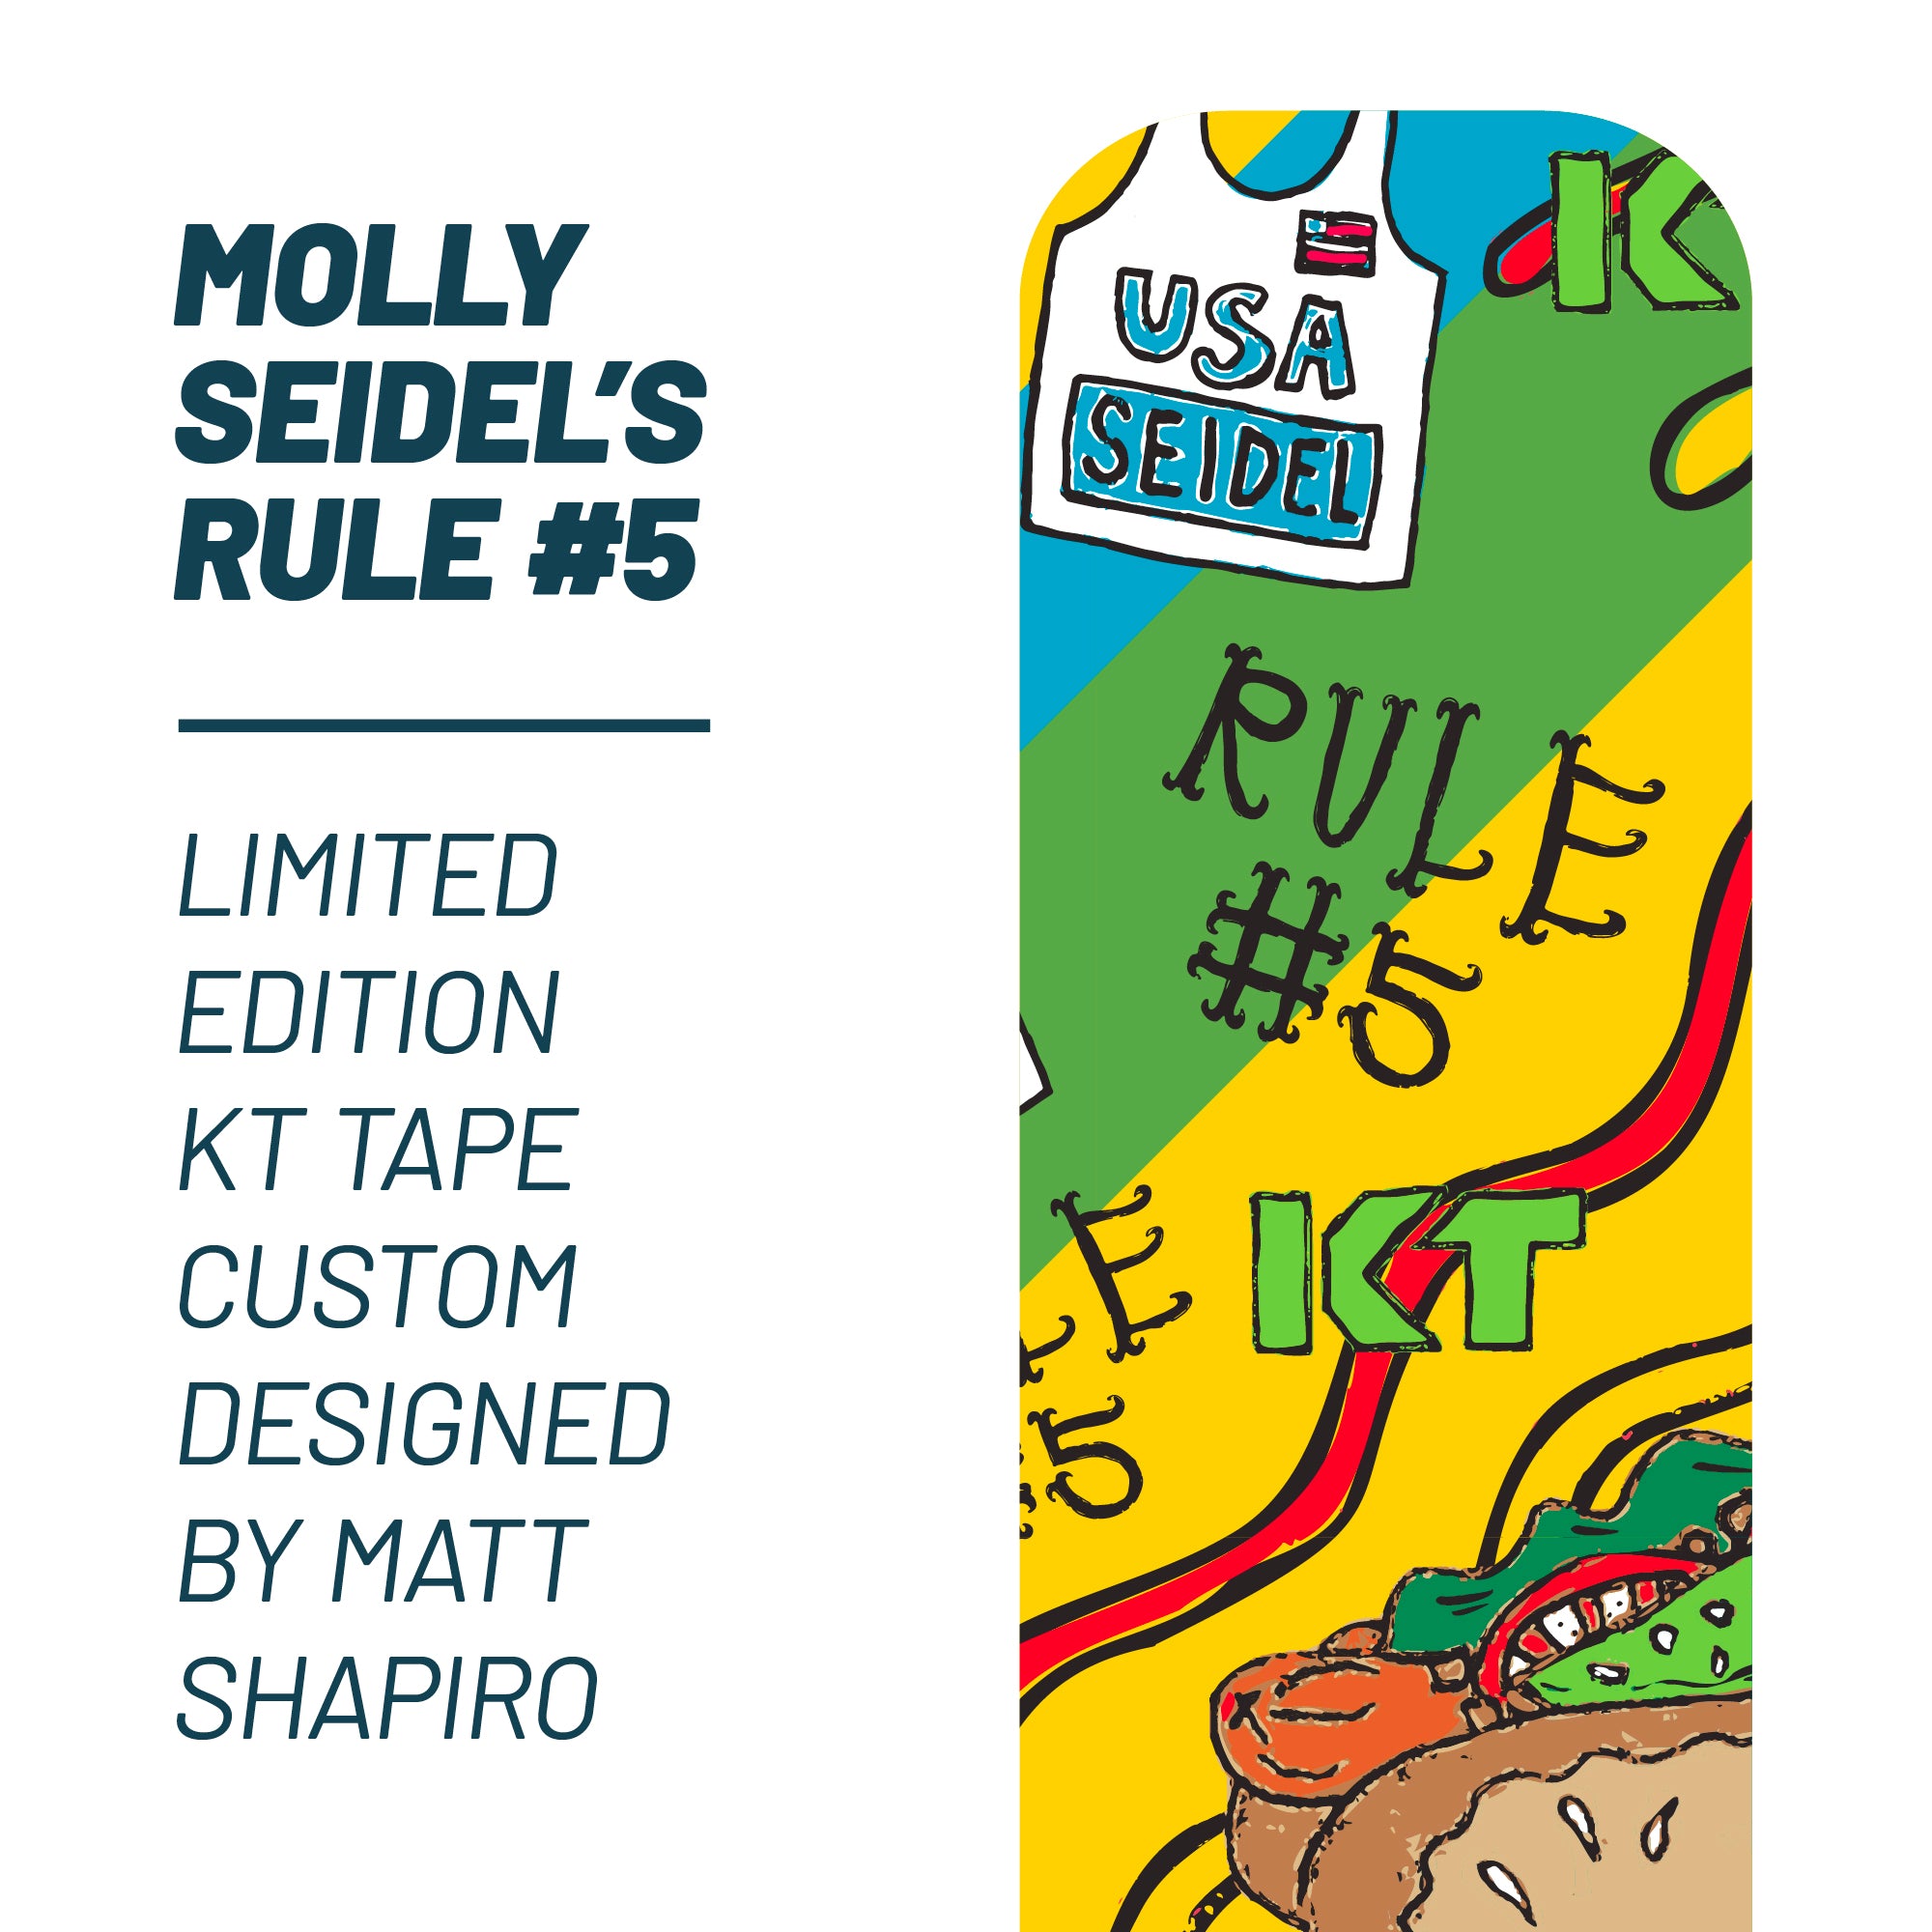 Molly Seidel's Rule #5